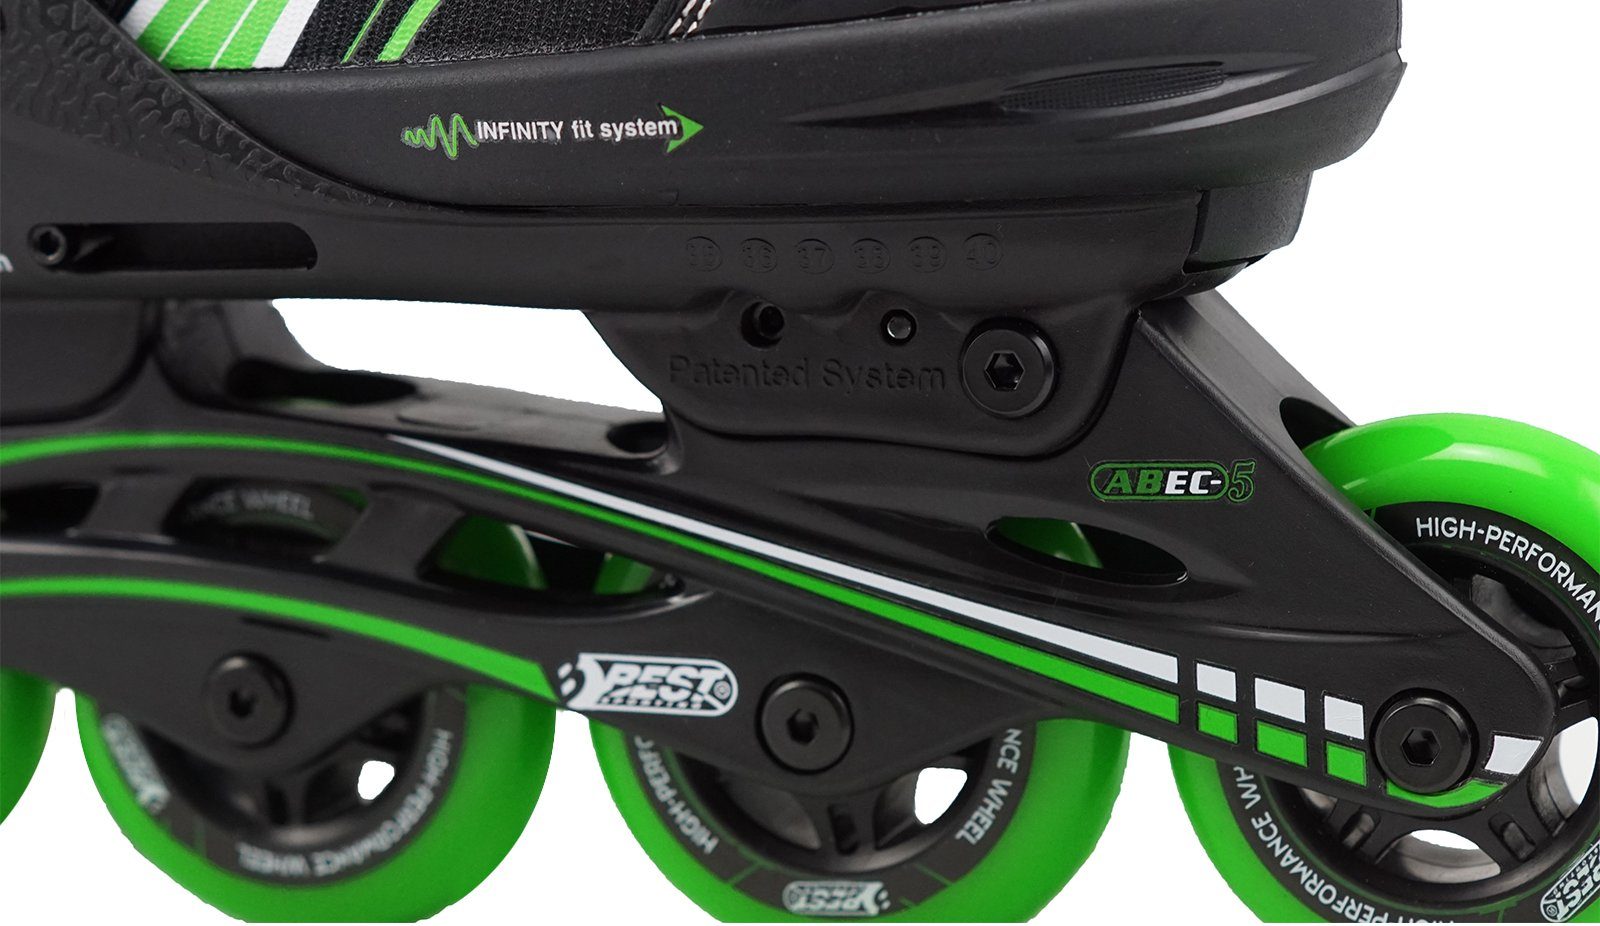 Best Sporting Inlineskates Inline Skates Größe grün Carbon ABEC verstellbar, 5